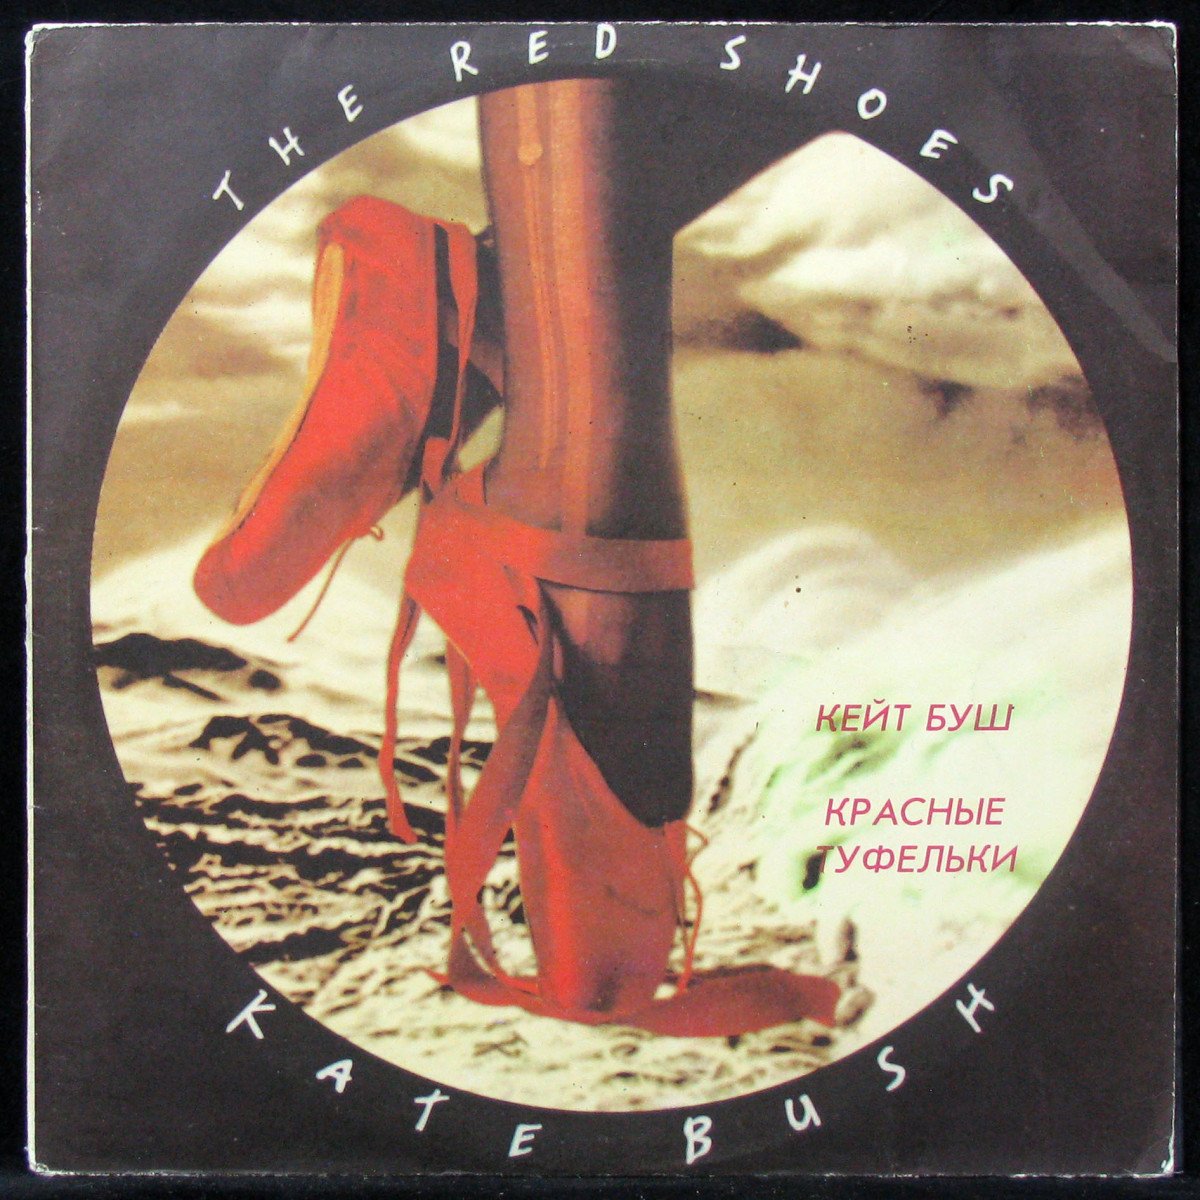 LP Kate Bush — Red Shoes фото